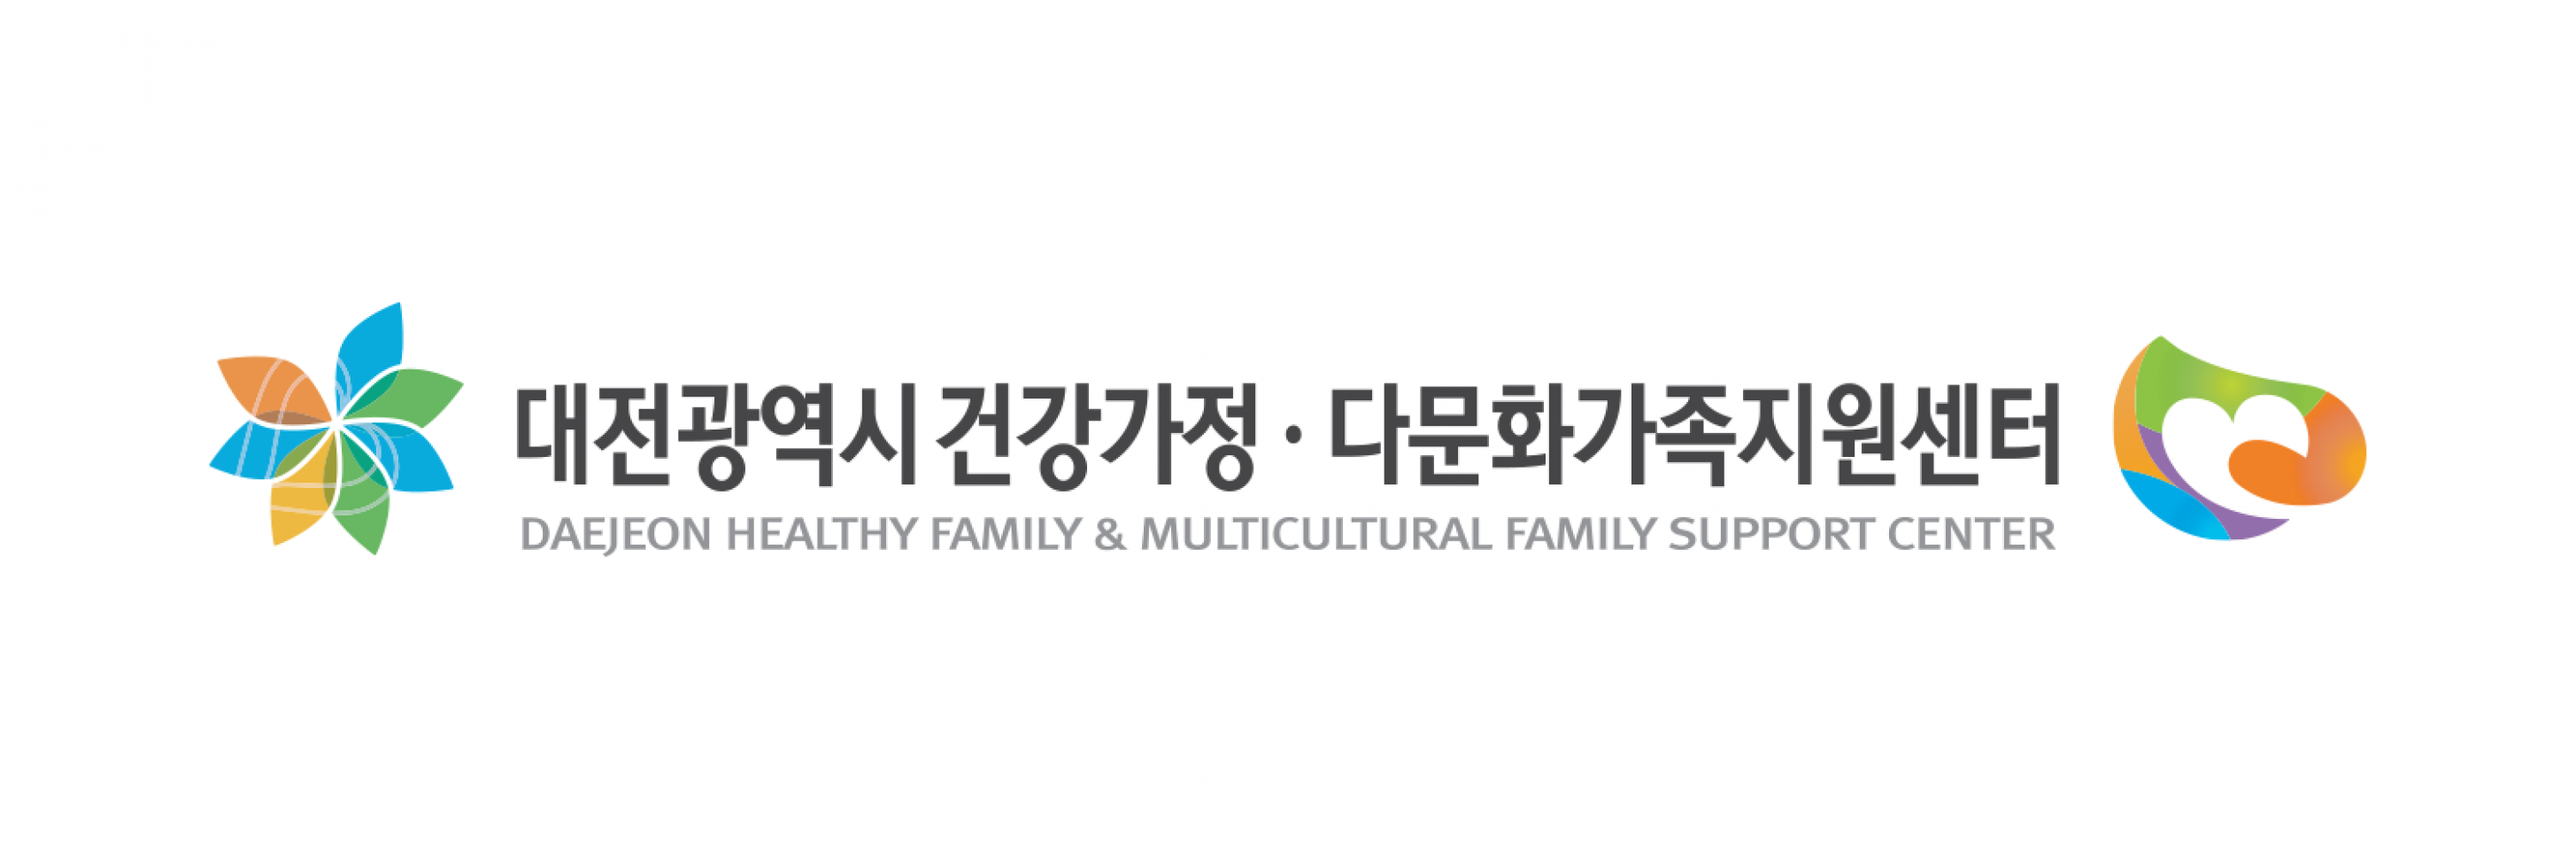 대전광역시 건강가정·다문화가족 지원센터